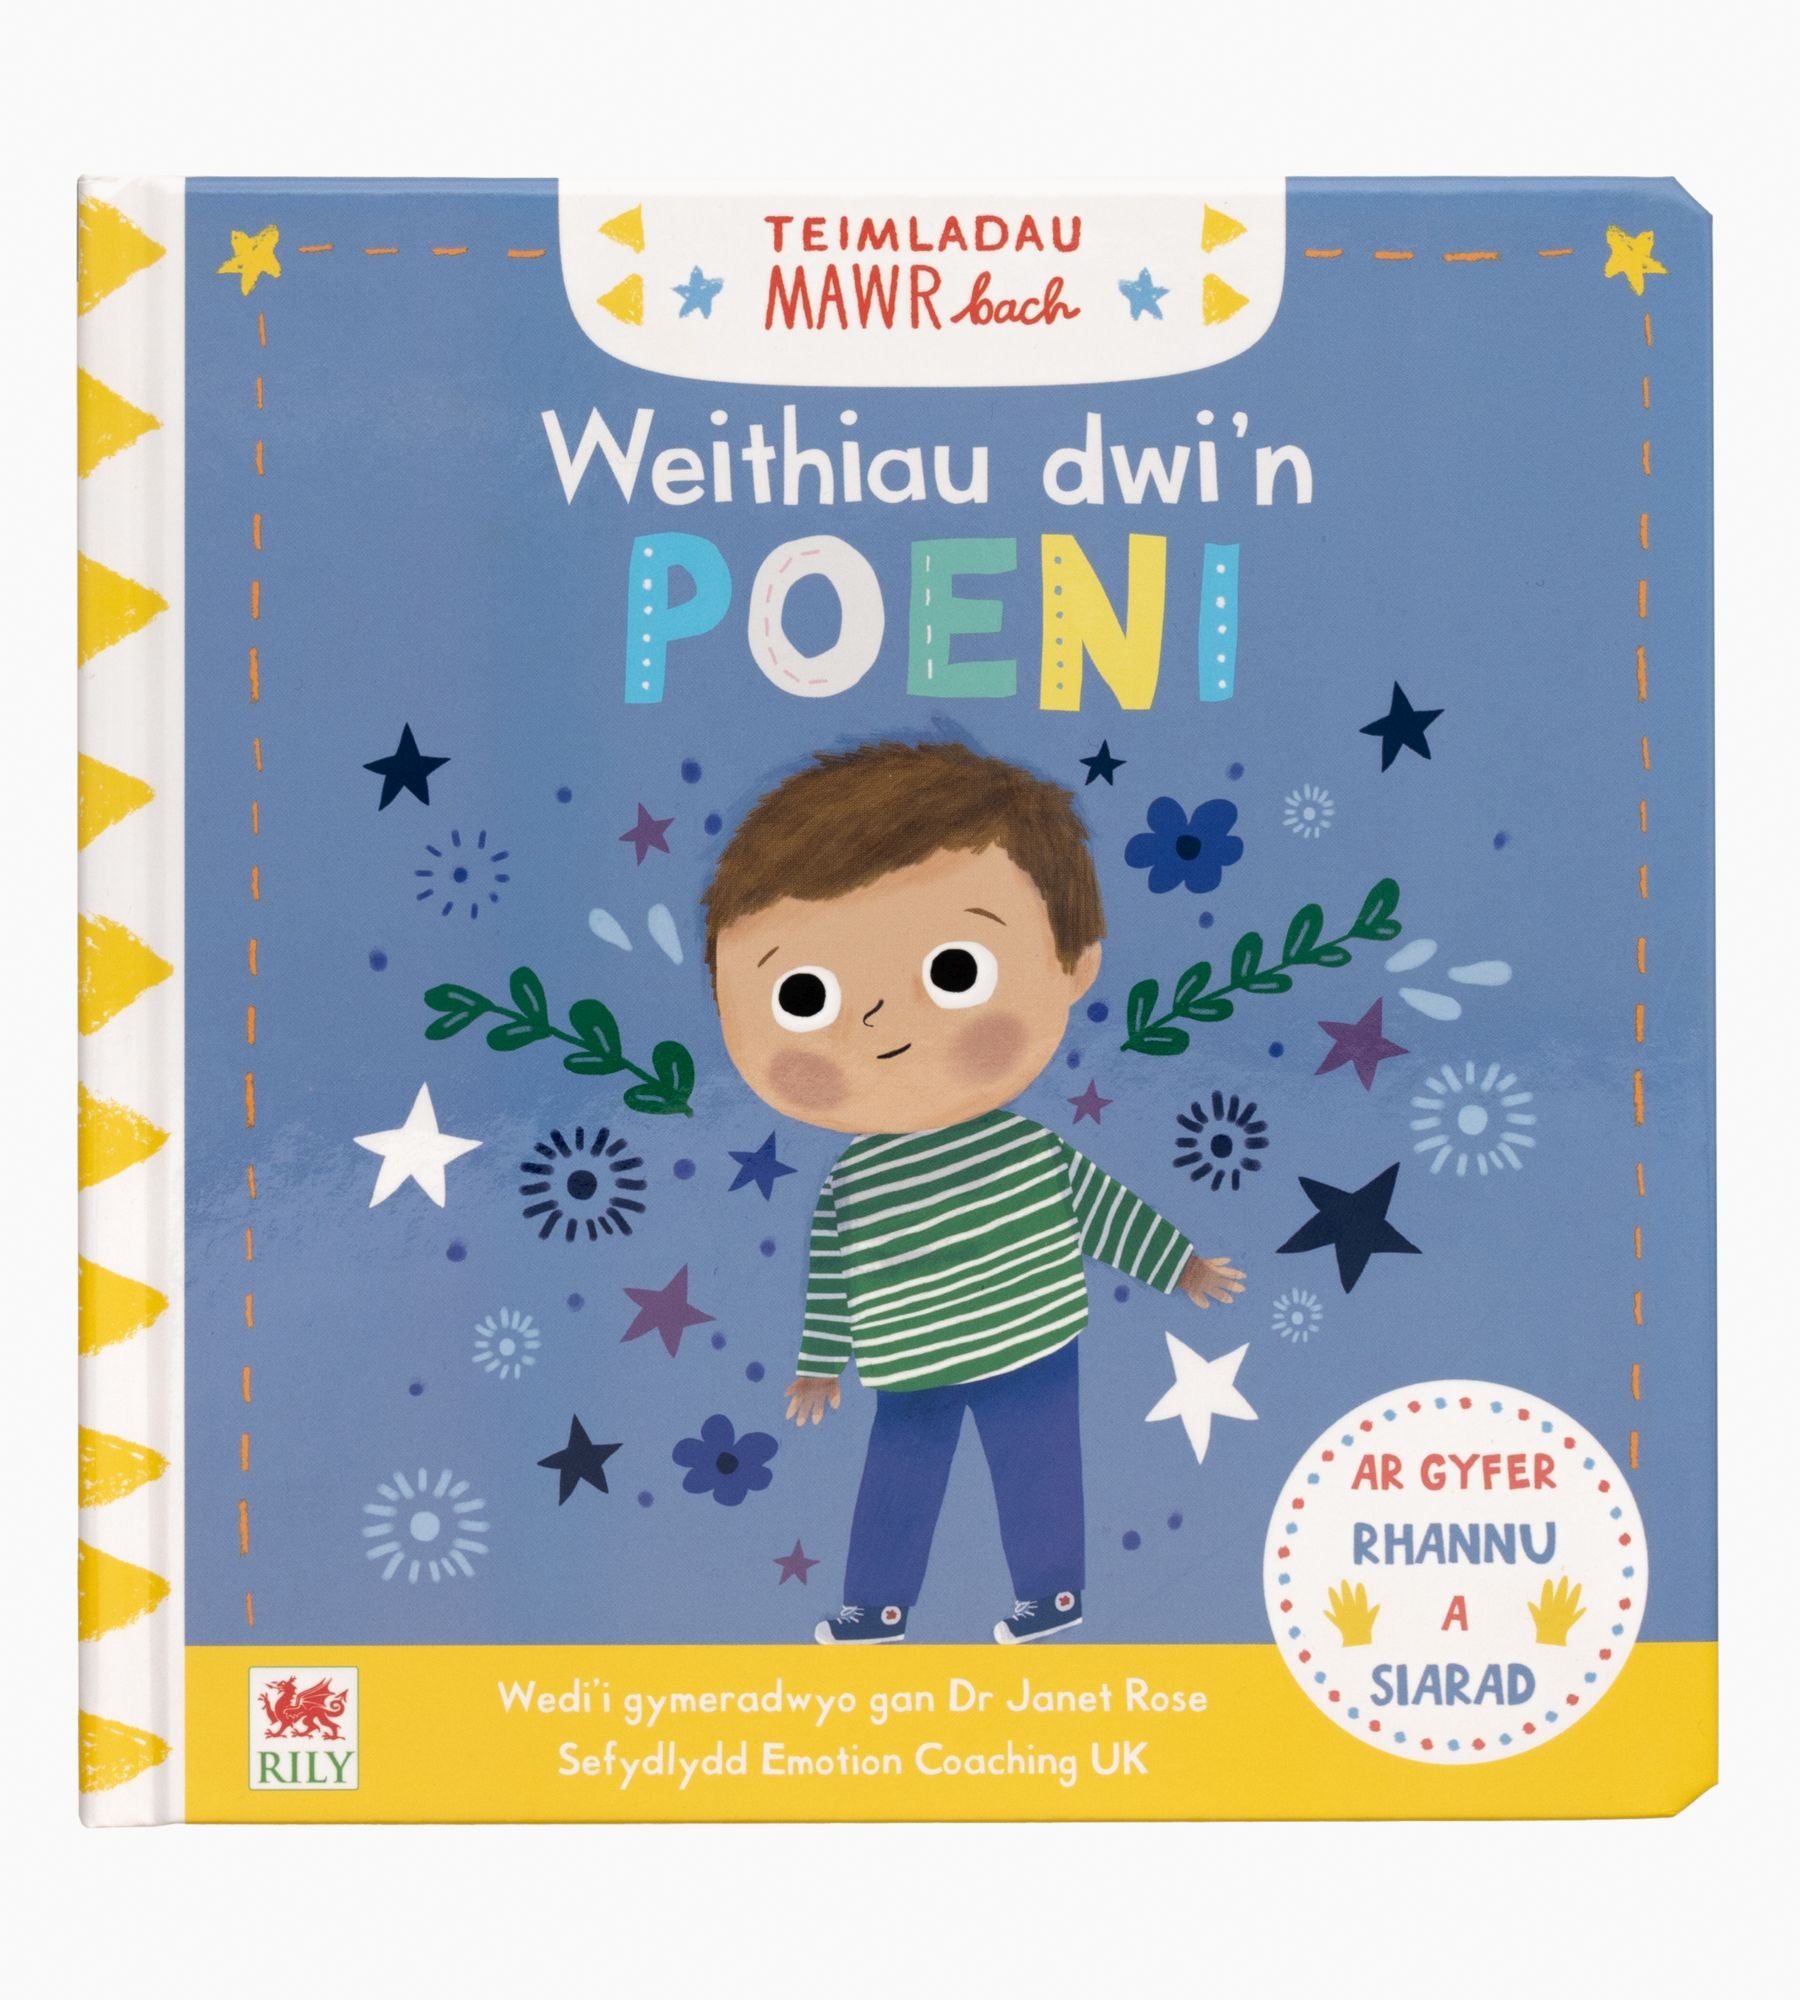 'Weithiau dwi'n poeni' book